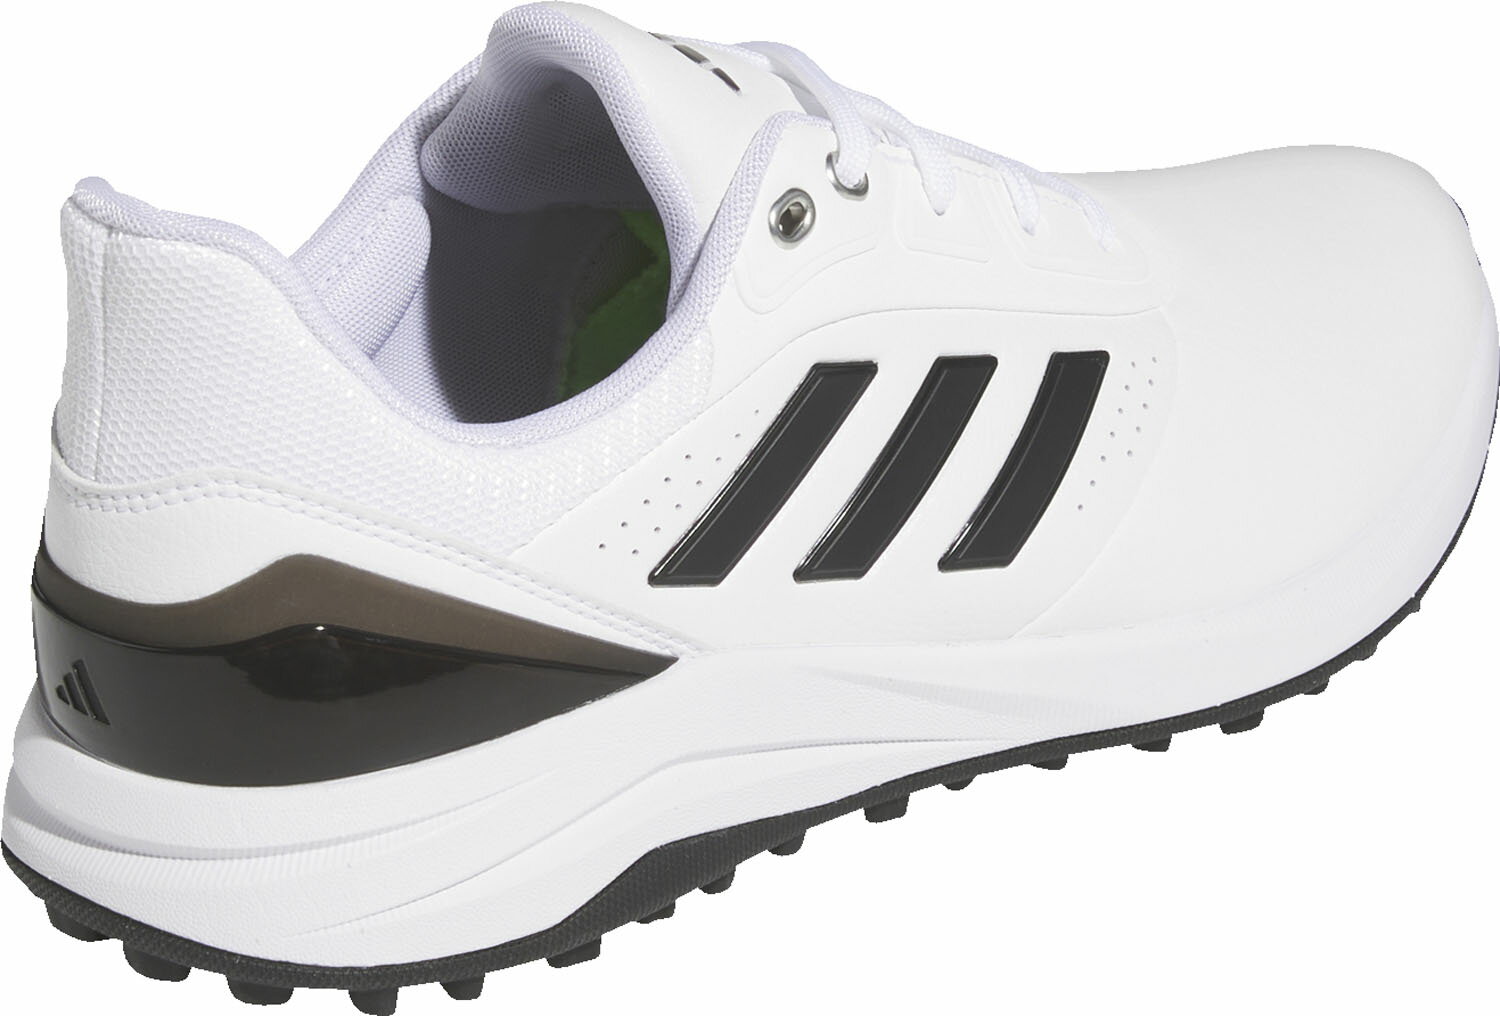 【6月1日はポイントアップ】 adidas アディダス ゴルフ ソーラーモーション 24 メンズ くつ 靴 シューズ ゴルフシューズ ゴルファー スパイクレスシューズ 軽量 高性能 ゴルフ用品 履きやすい スパイク MDK73 2